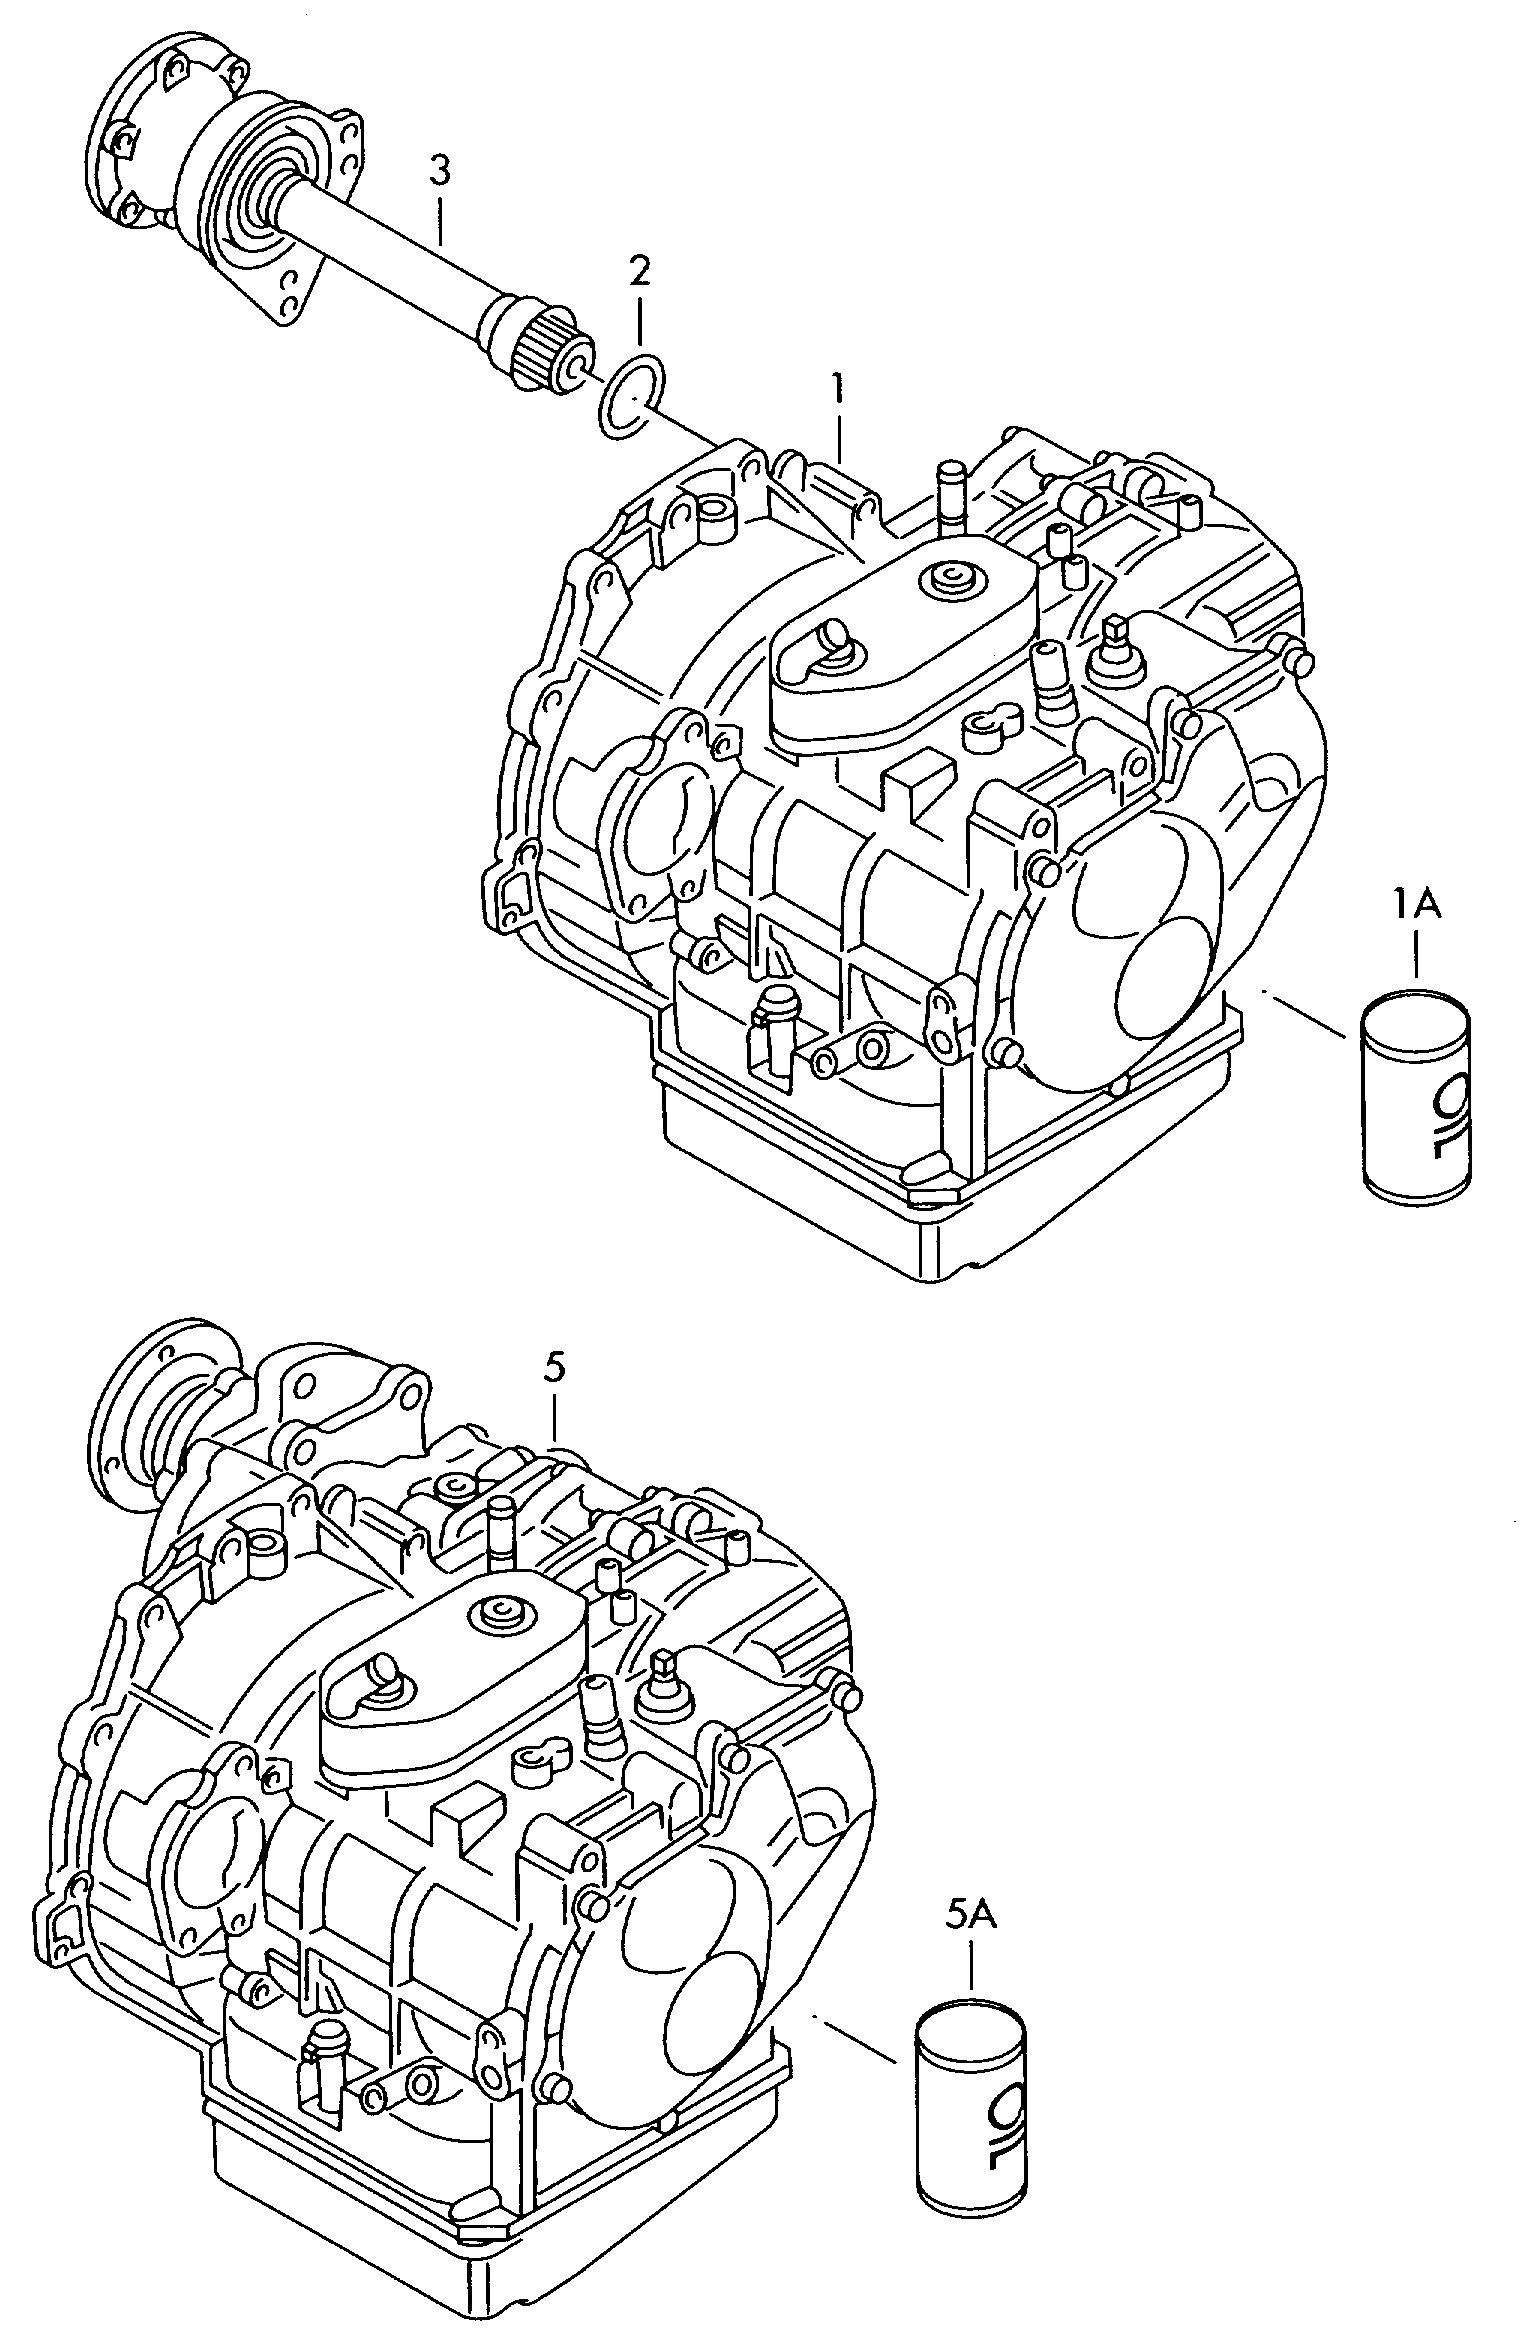 整个变速箱; 4档自动变速箱 - Alhambra(AL)  